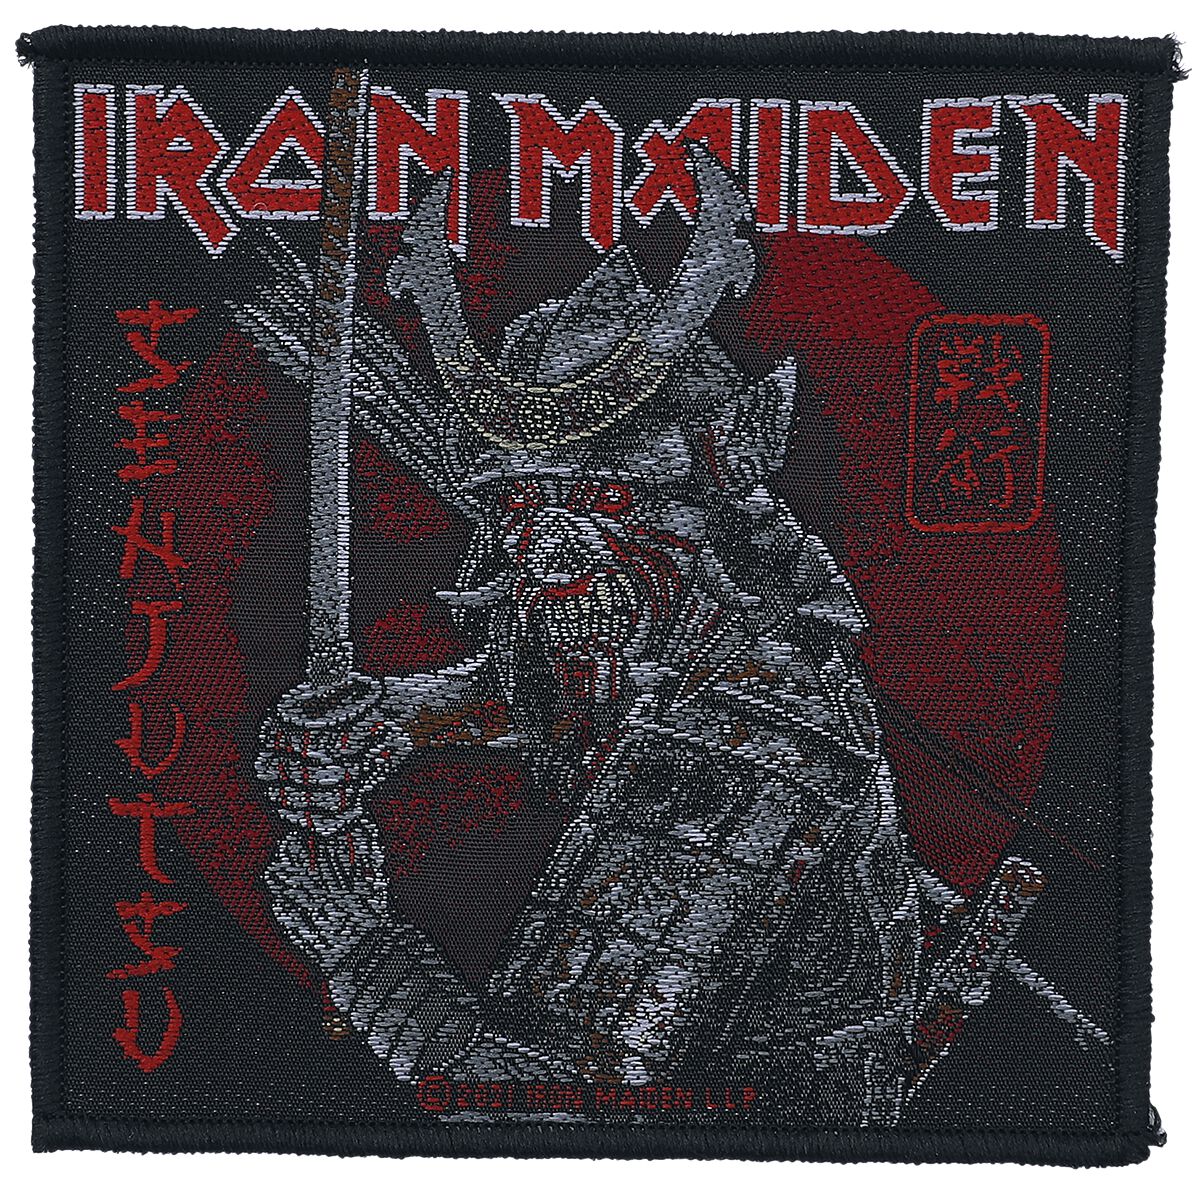 Iron Maiden Patch - Senjutsu - schwarz/rot  - Lizenziertes Merchandise!